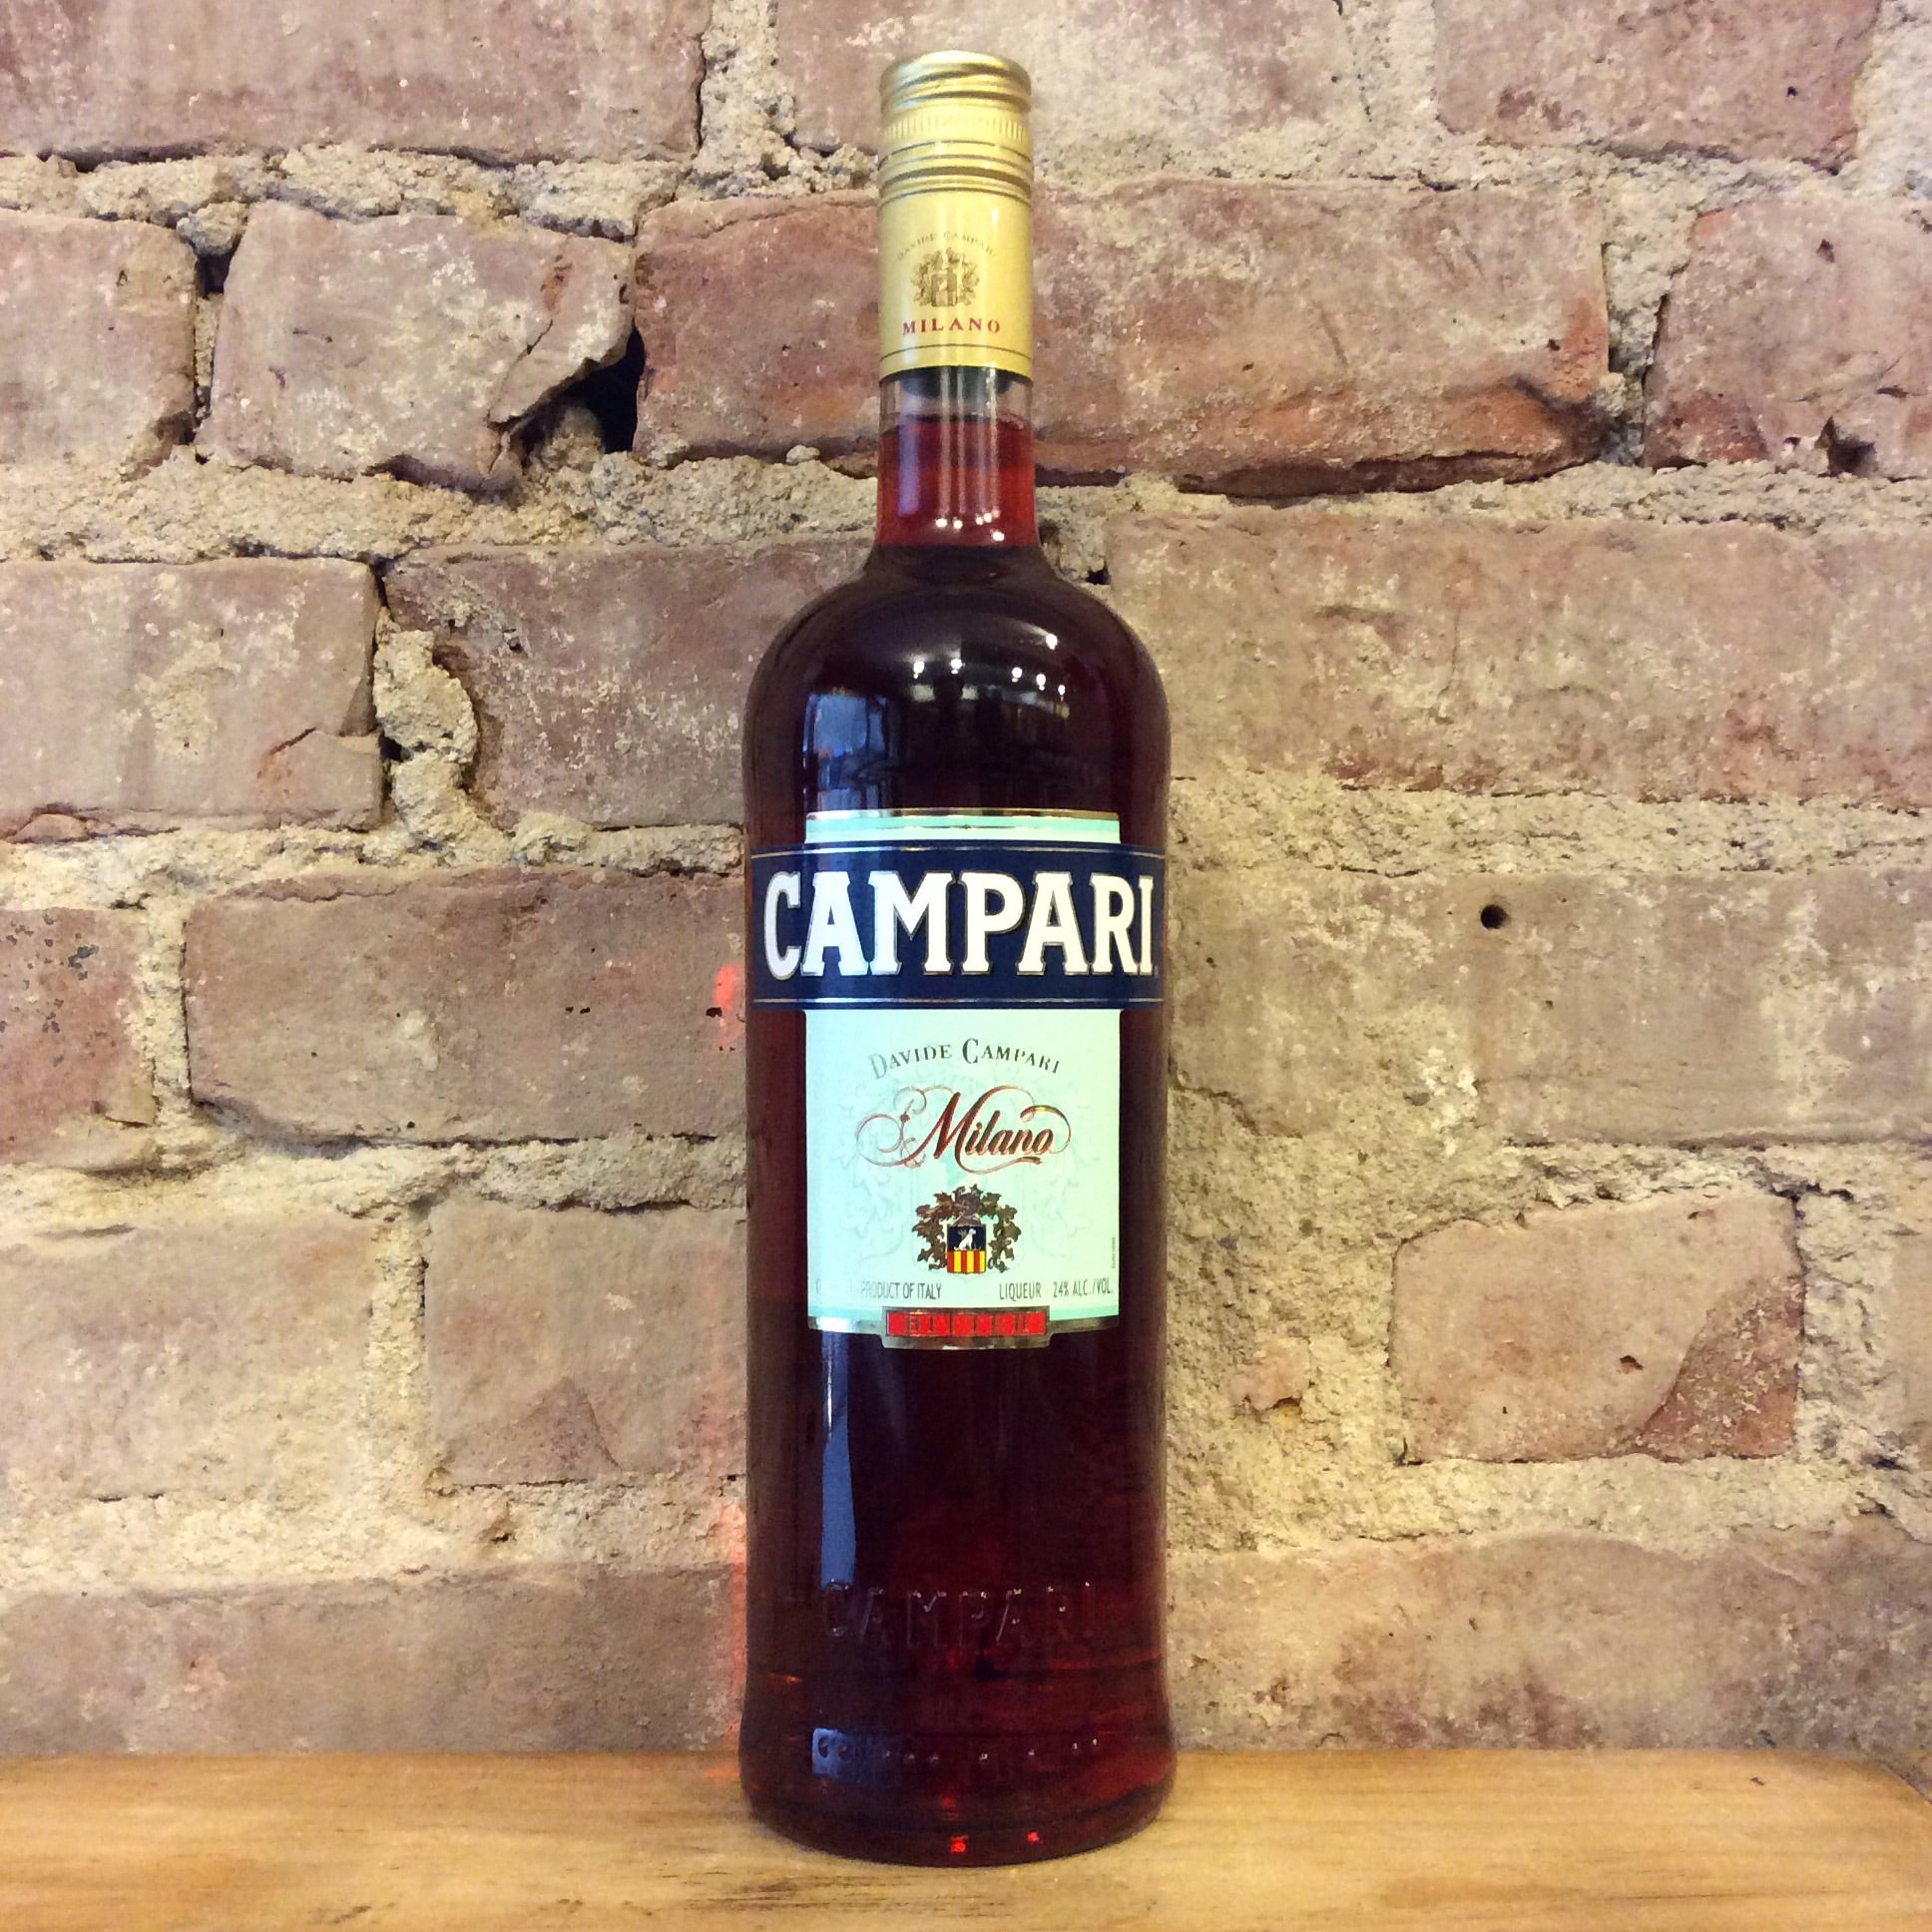 Campari Bitter 750ml Bottle